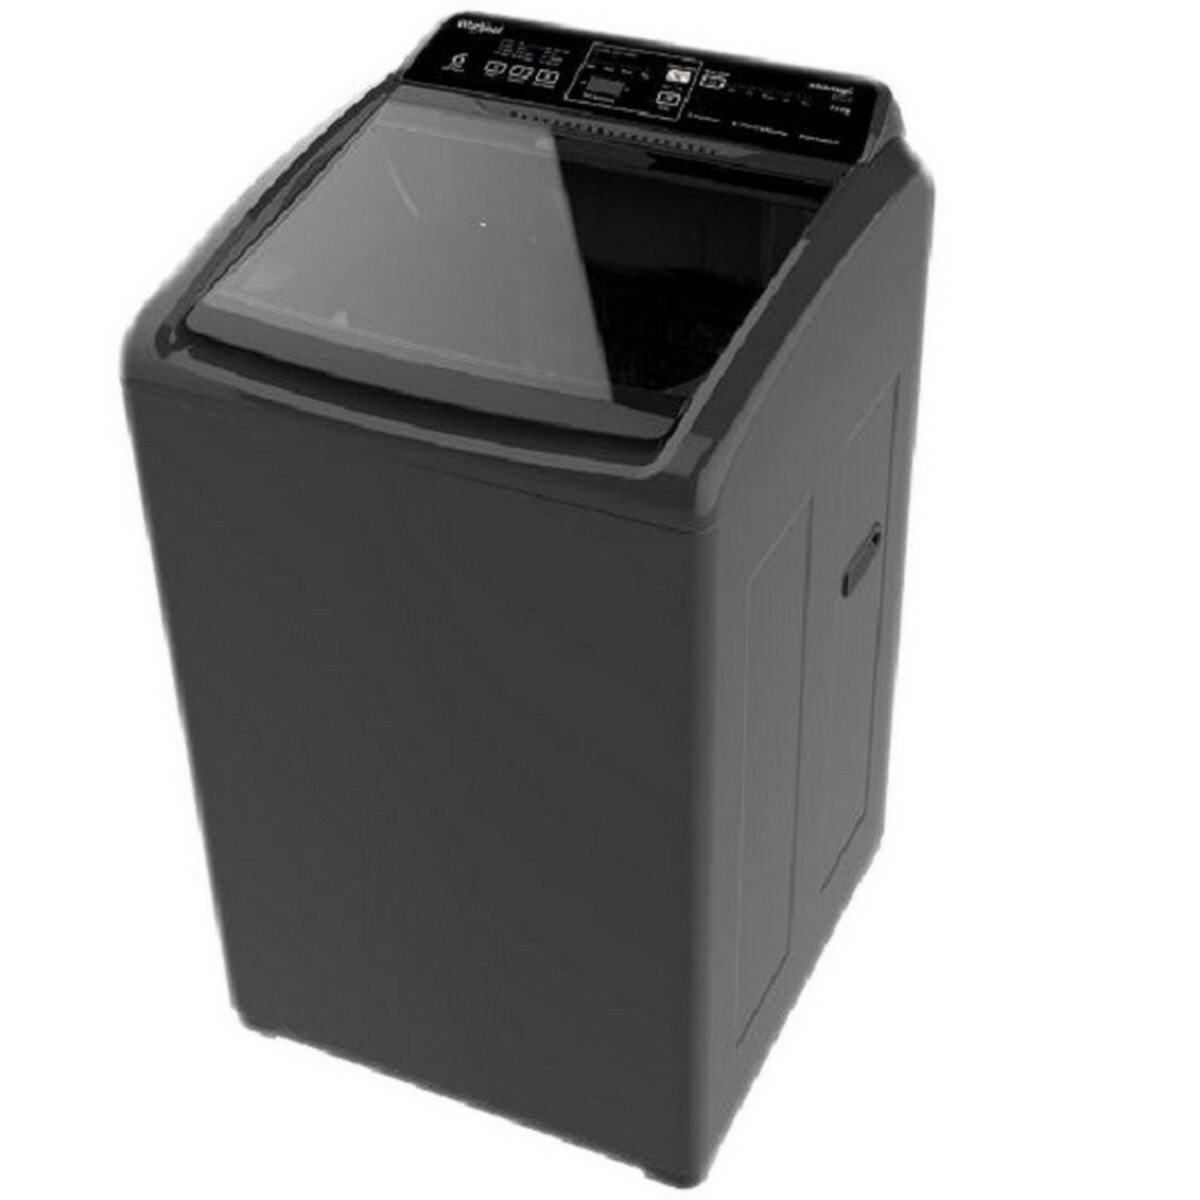 Whirlpool Fully Automatic Washing Machine Whitemagic Elite Grey 7.5kg